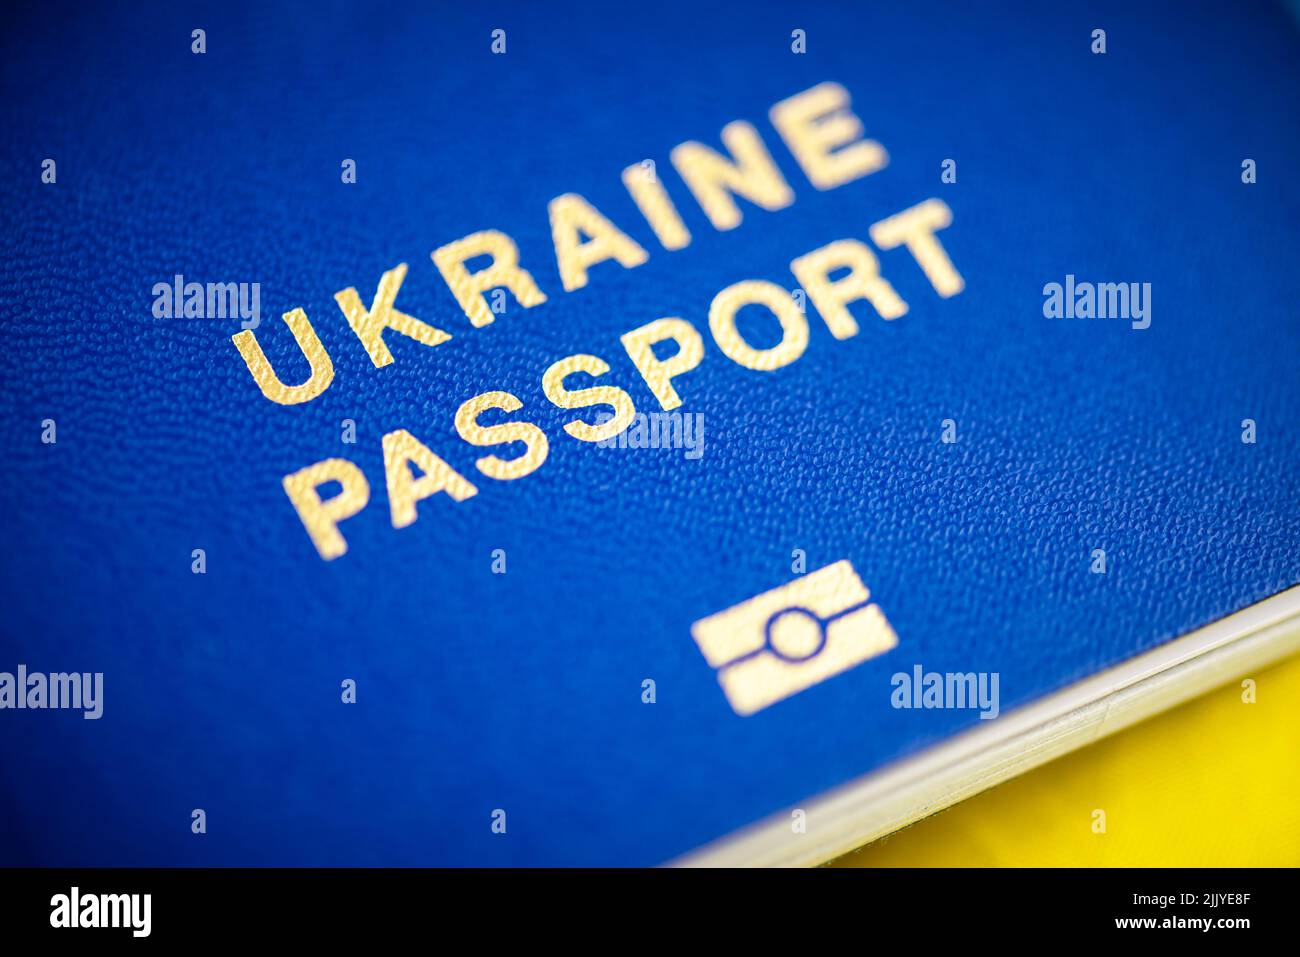 Passaporti biometrici ucraini con primo piano bandiera nazionale giallo-blu. Fotografia macro Foto Stock